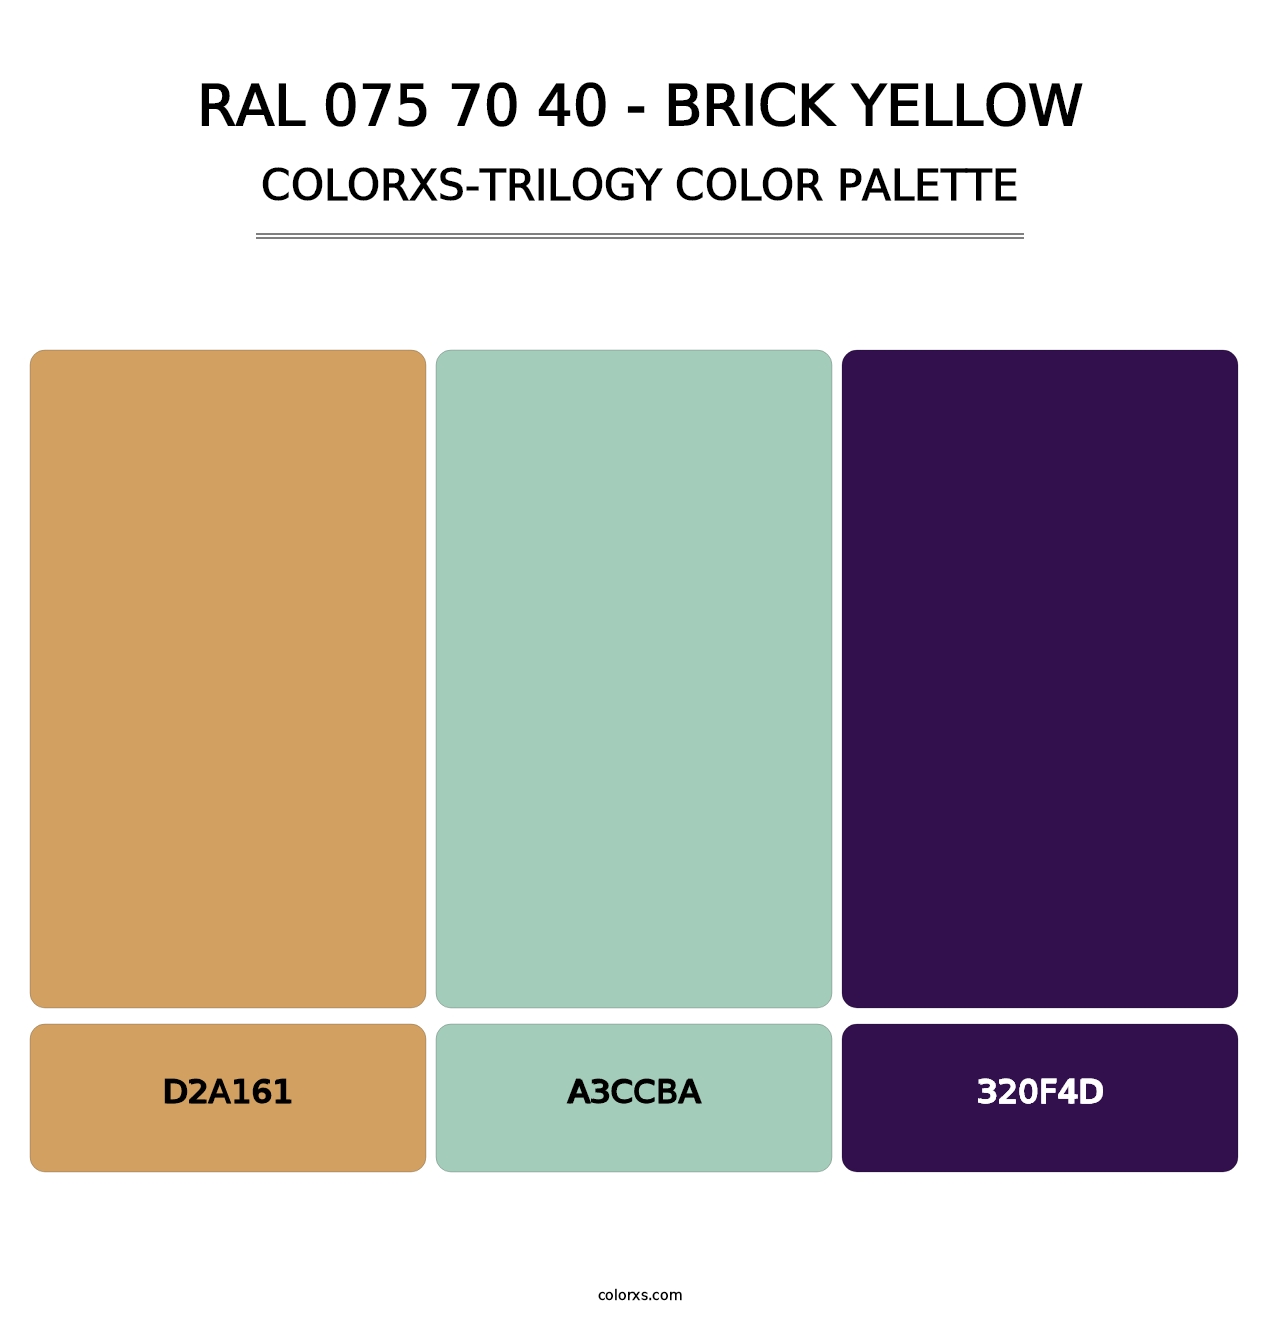 RAL 075 70 40 - Brick Yellow - Colorxs Trilogy Palette